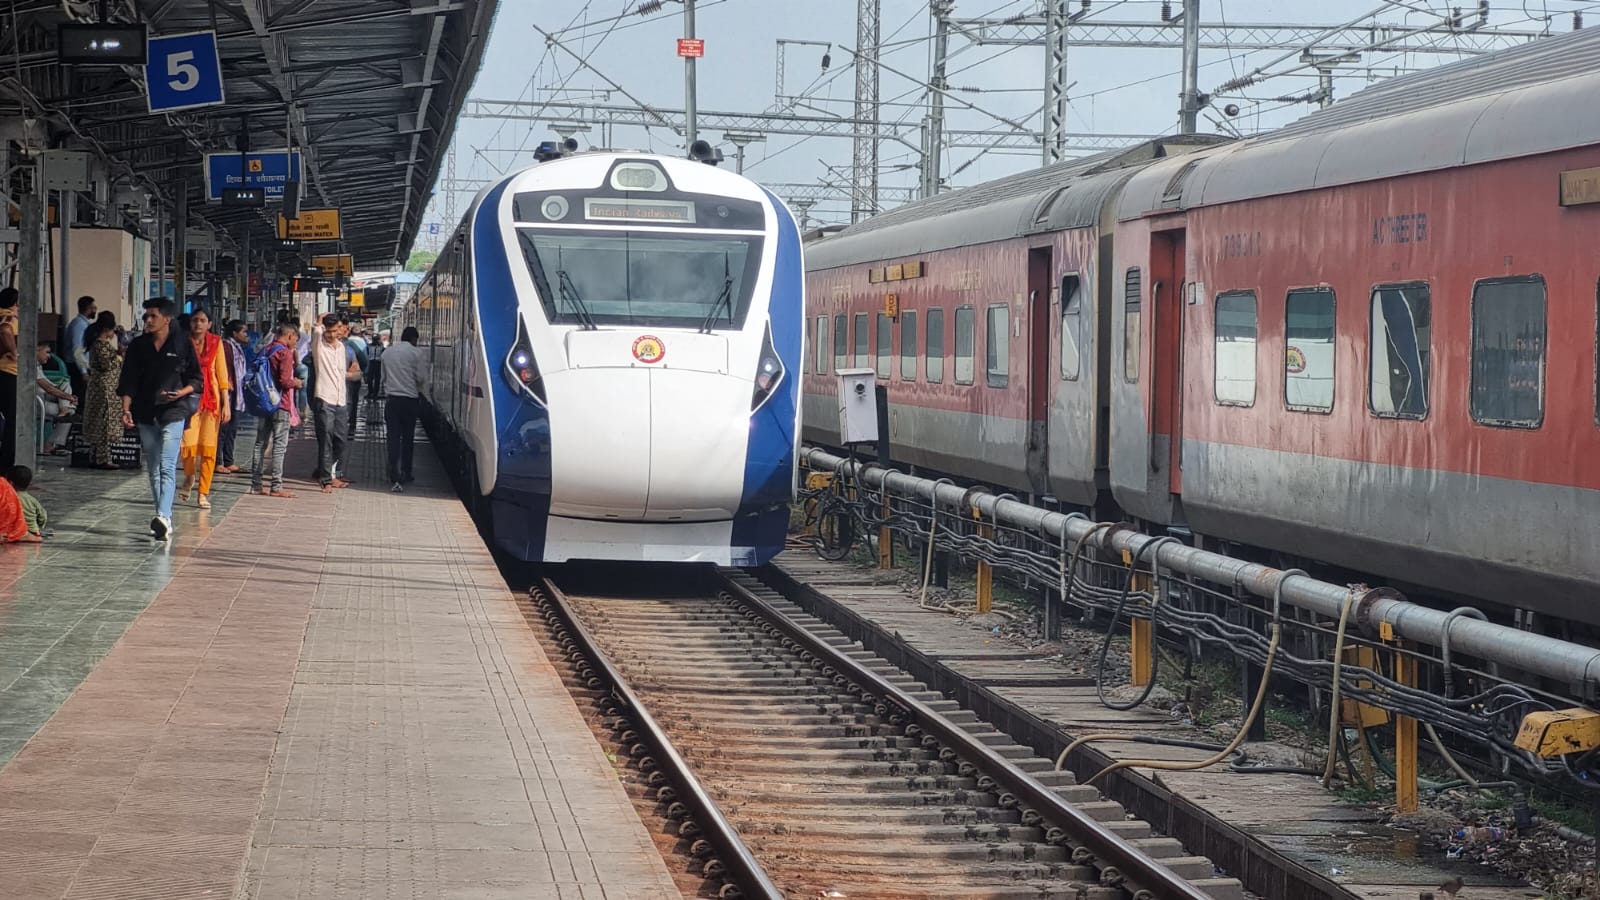 नई वंदे भारत ट्रेन के रेक में विभिन्न तरह के सुधार कर यात्रियों को बेहतर और सुविधाजनक यात्रा के लिए रेलवे की प्रतिबद्धता